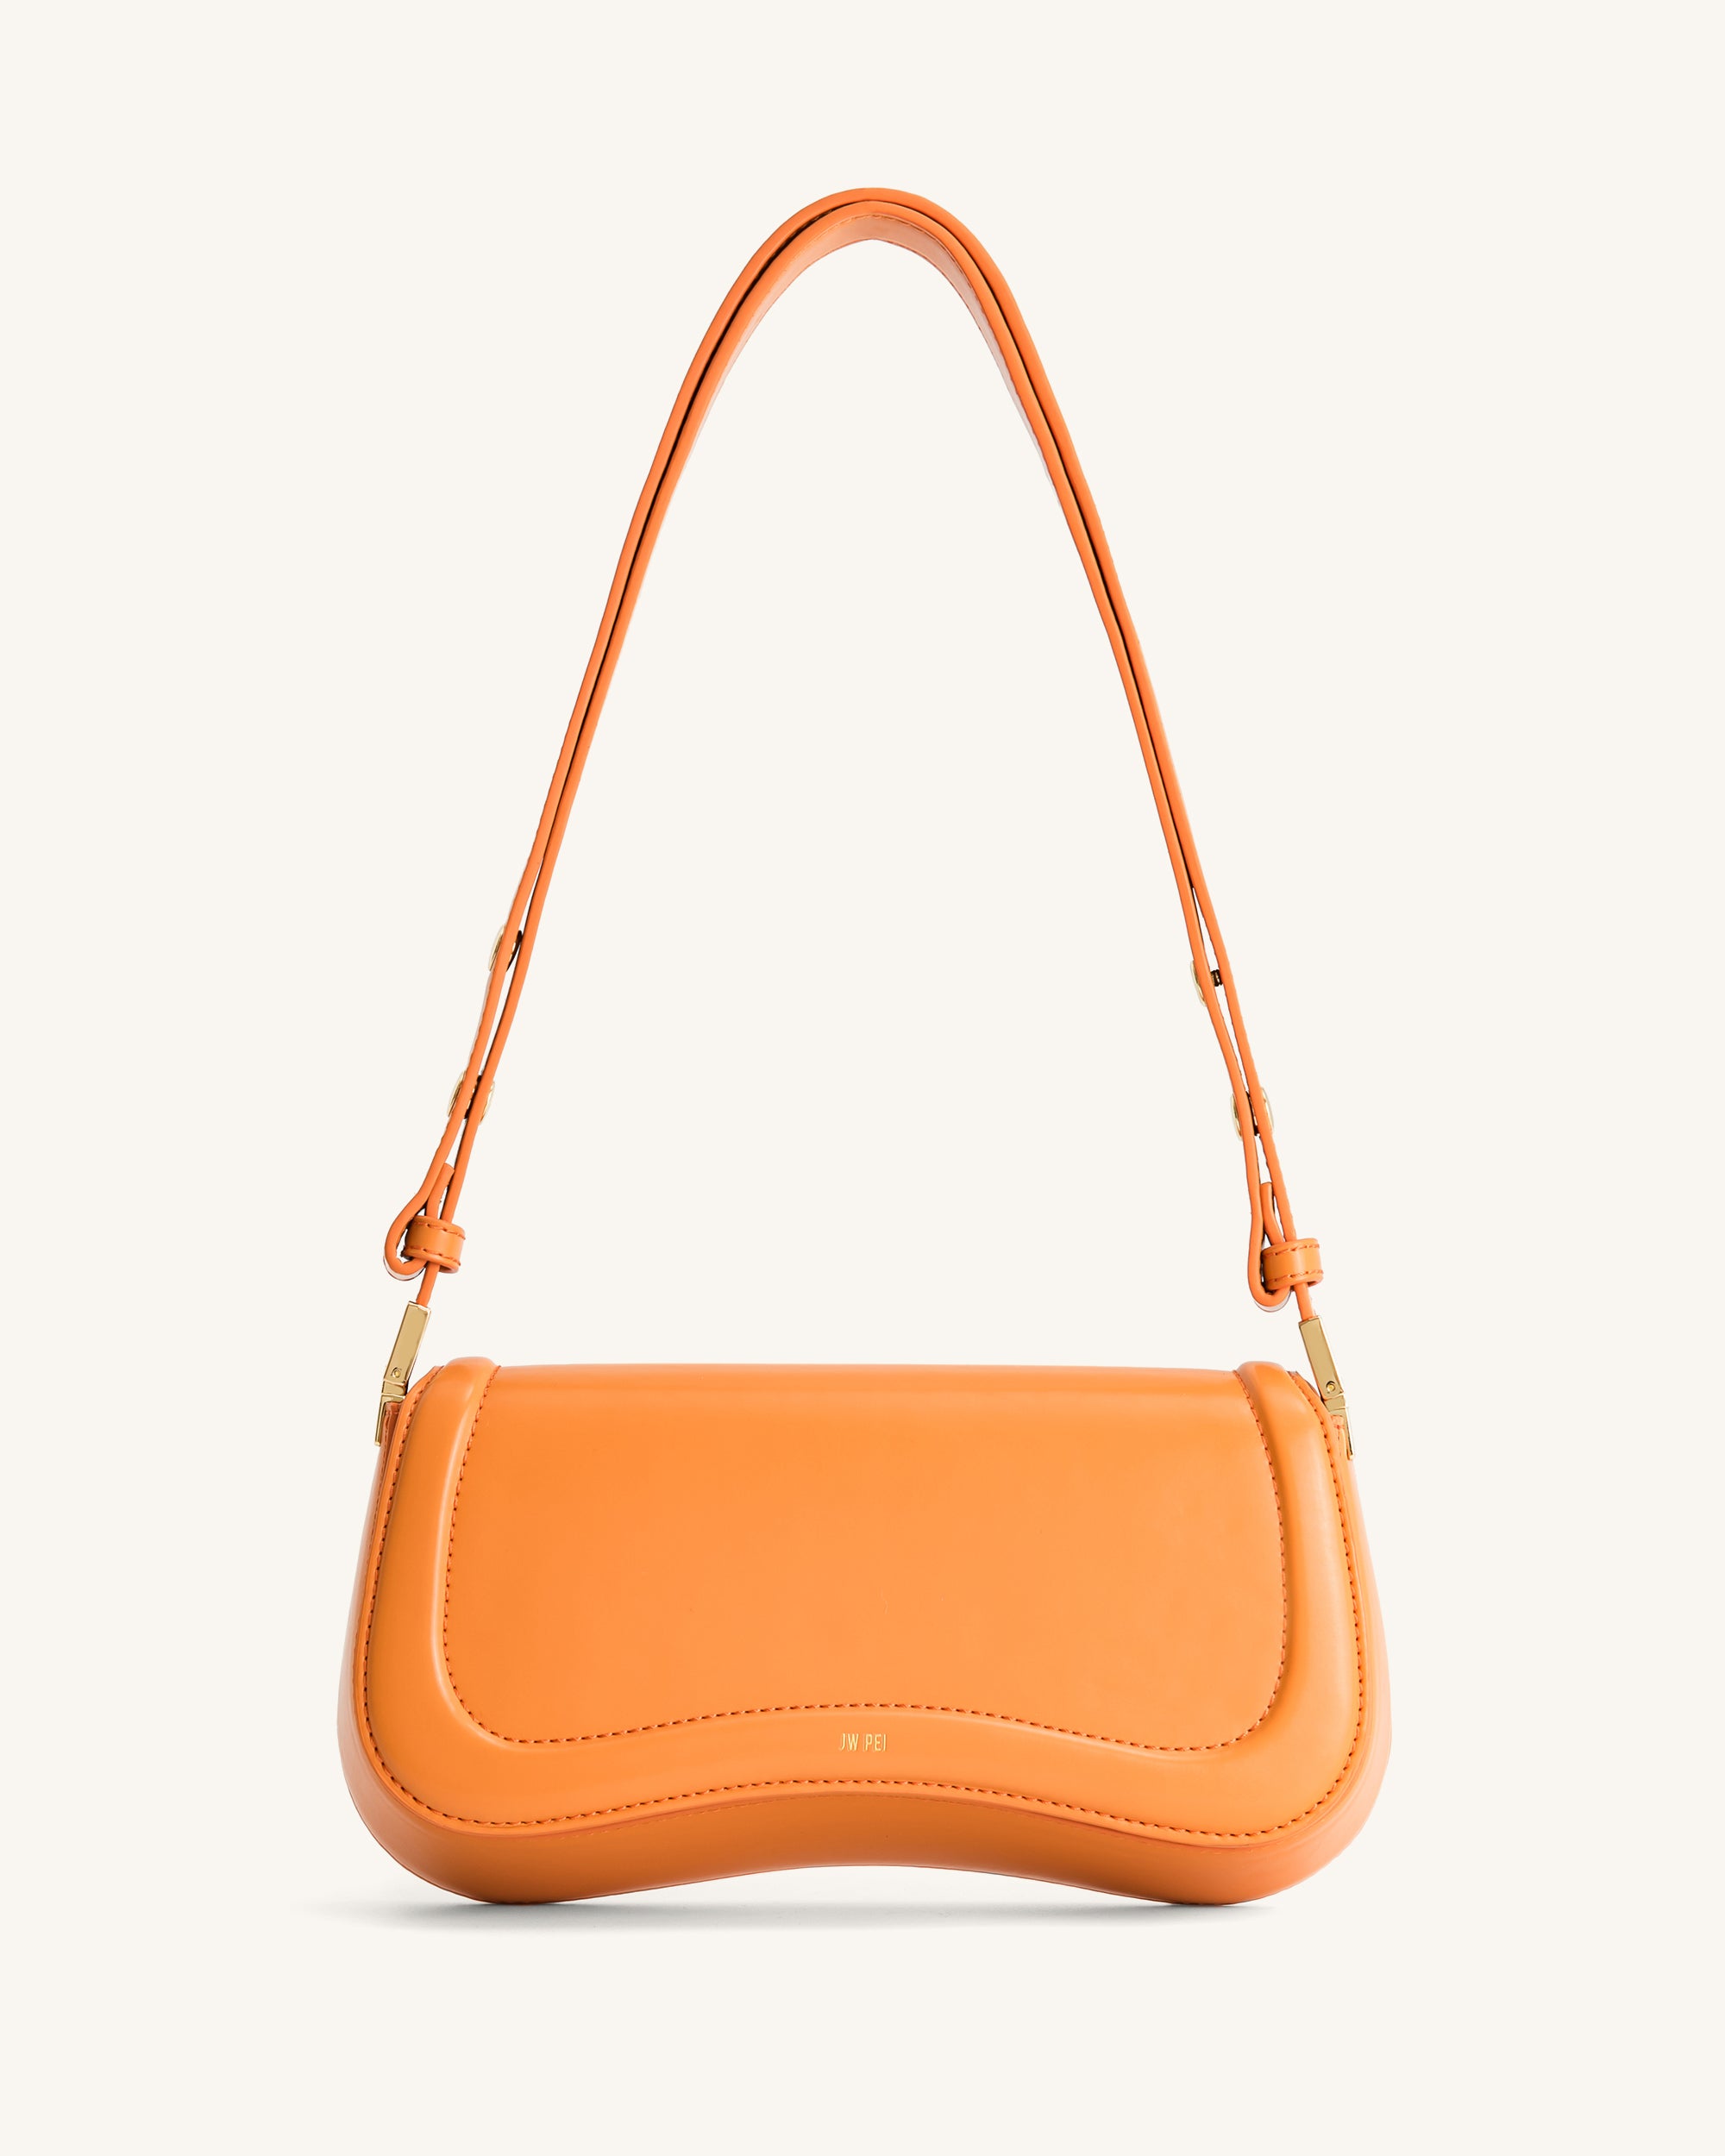 Women's Shoulder Bag - Vegan Leather - JW PEI Official Sale